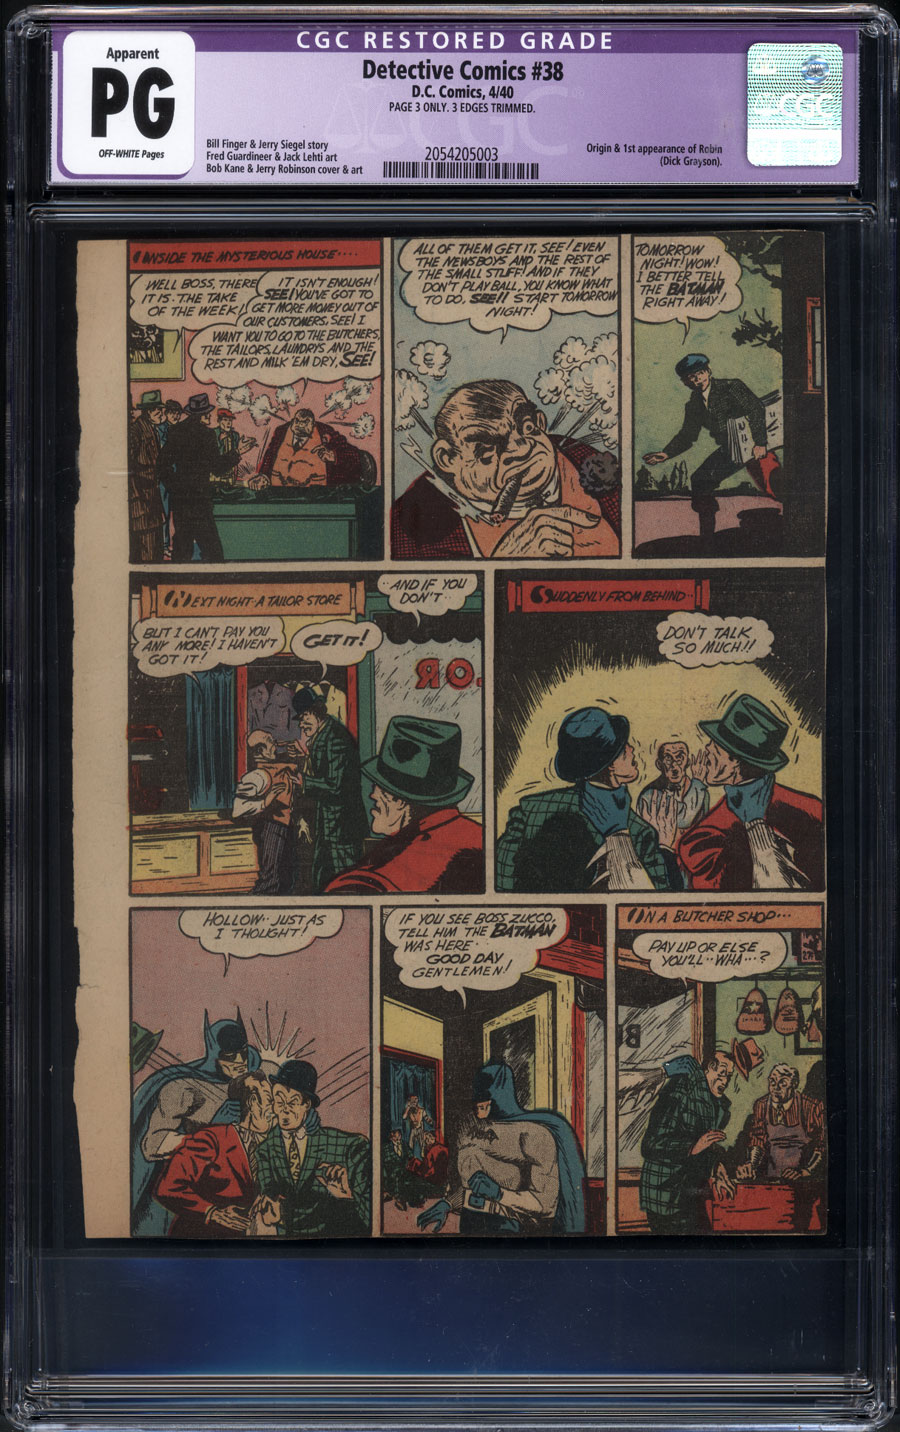 世界中の商品を購入 バットマン  ロビン in Detective Comics #38 フィギュア ゲーム、おもちゃ